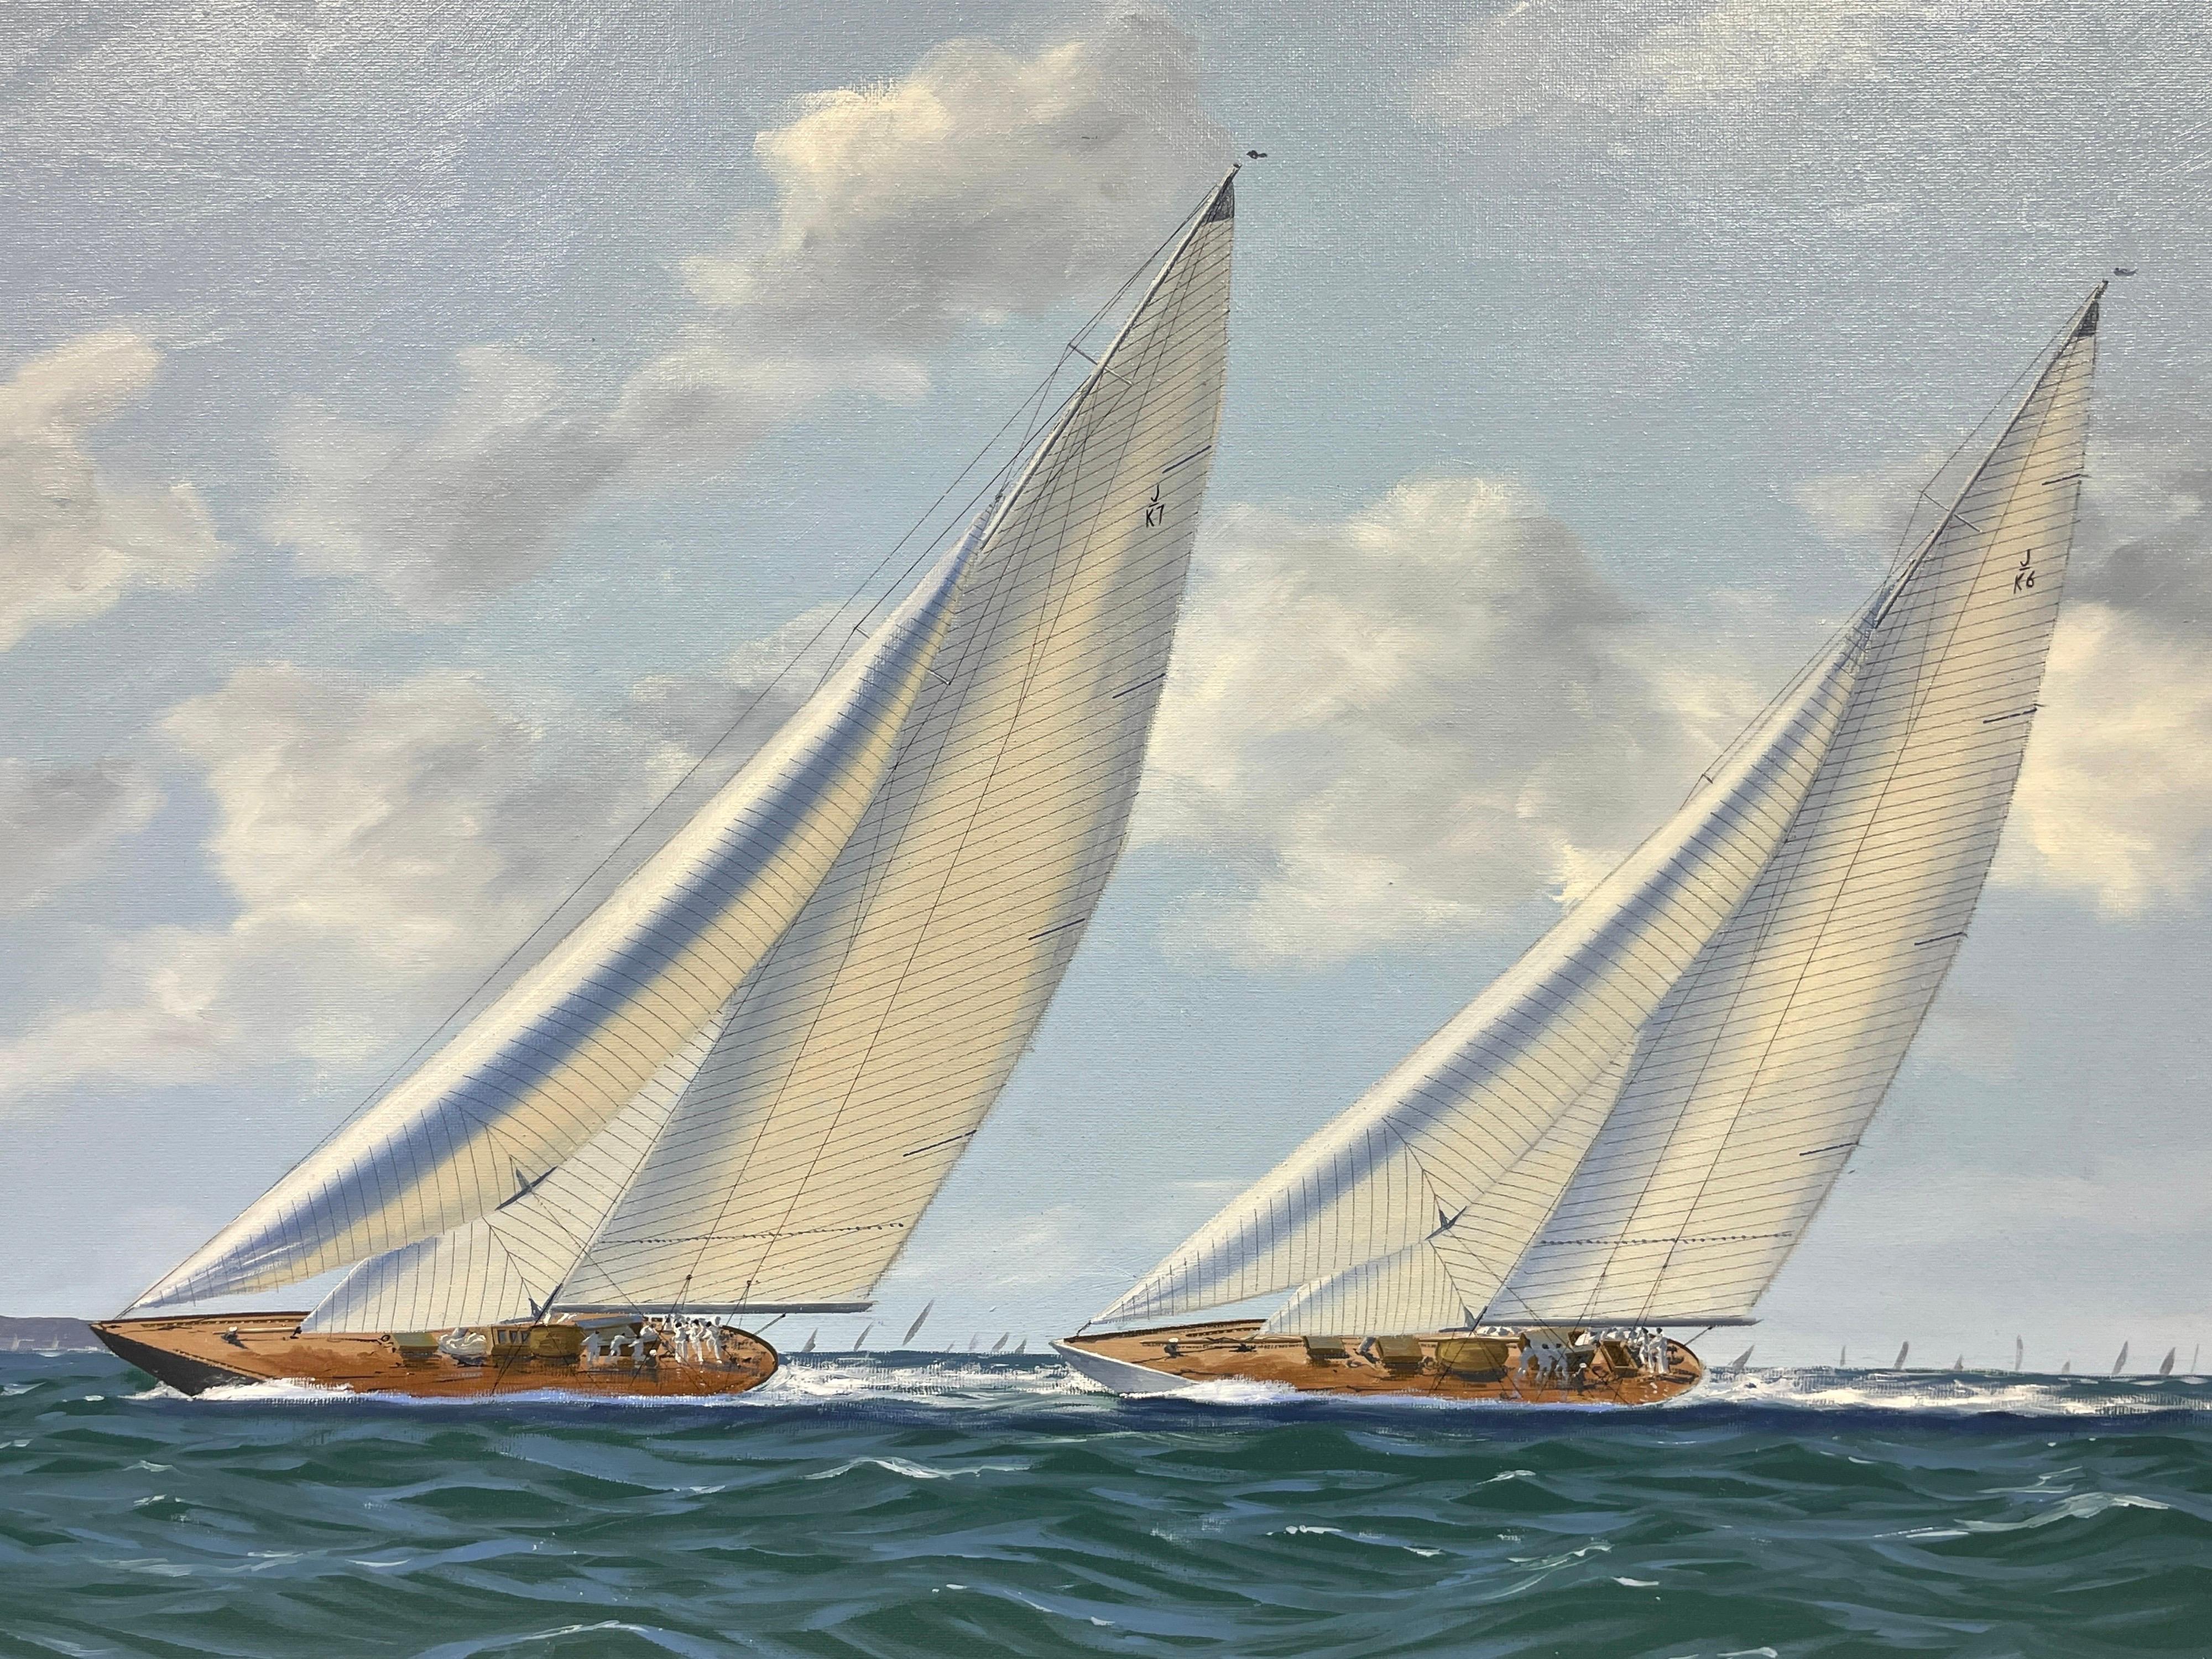 Klassische klassische Renn Yachts vor den Nadeln, signiertes Ölgemälde der britischen Marine (Grau), Figurative Painting, von George Drury